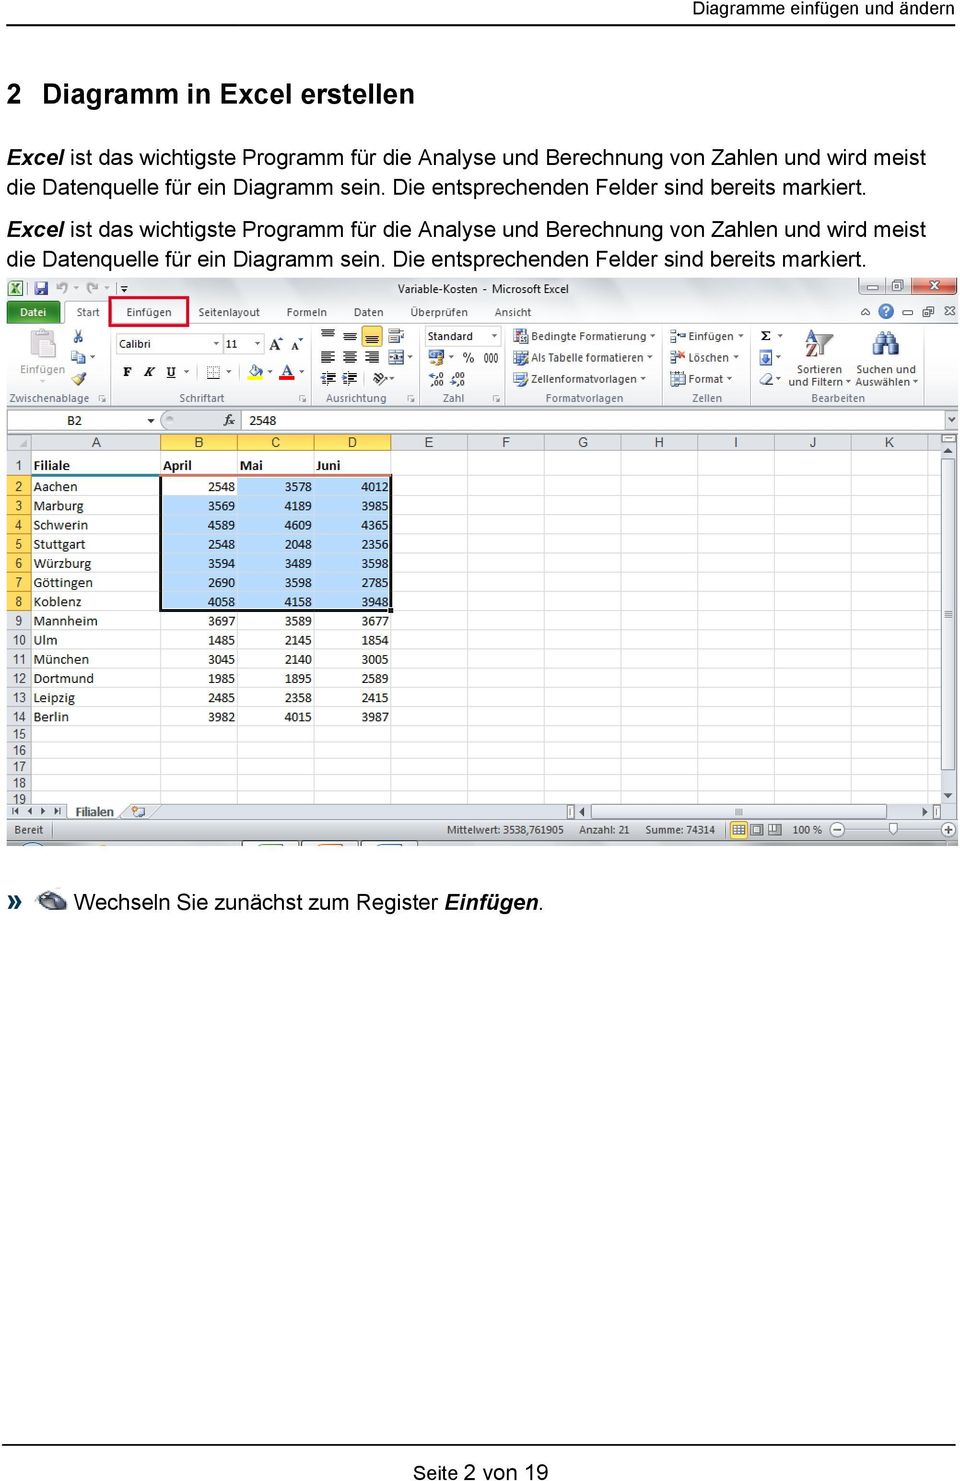 Excel ist das wichtigste Programm für die Analyse und Berechnung von Zahlen und » Wechseln Sie zunächst zum